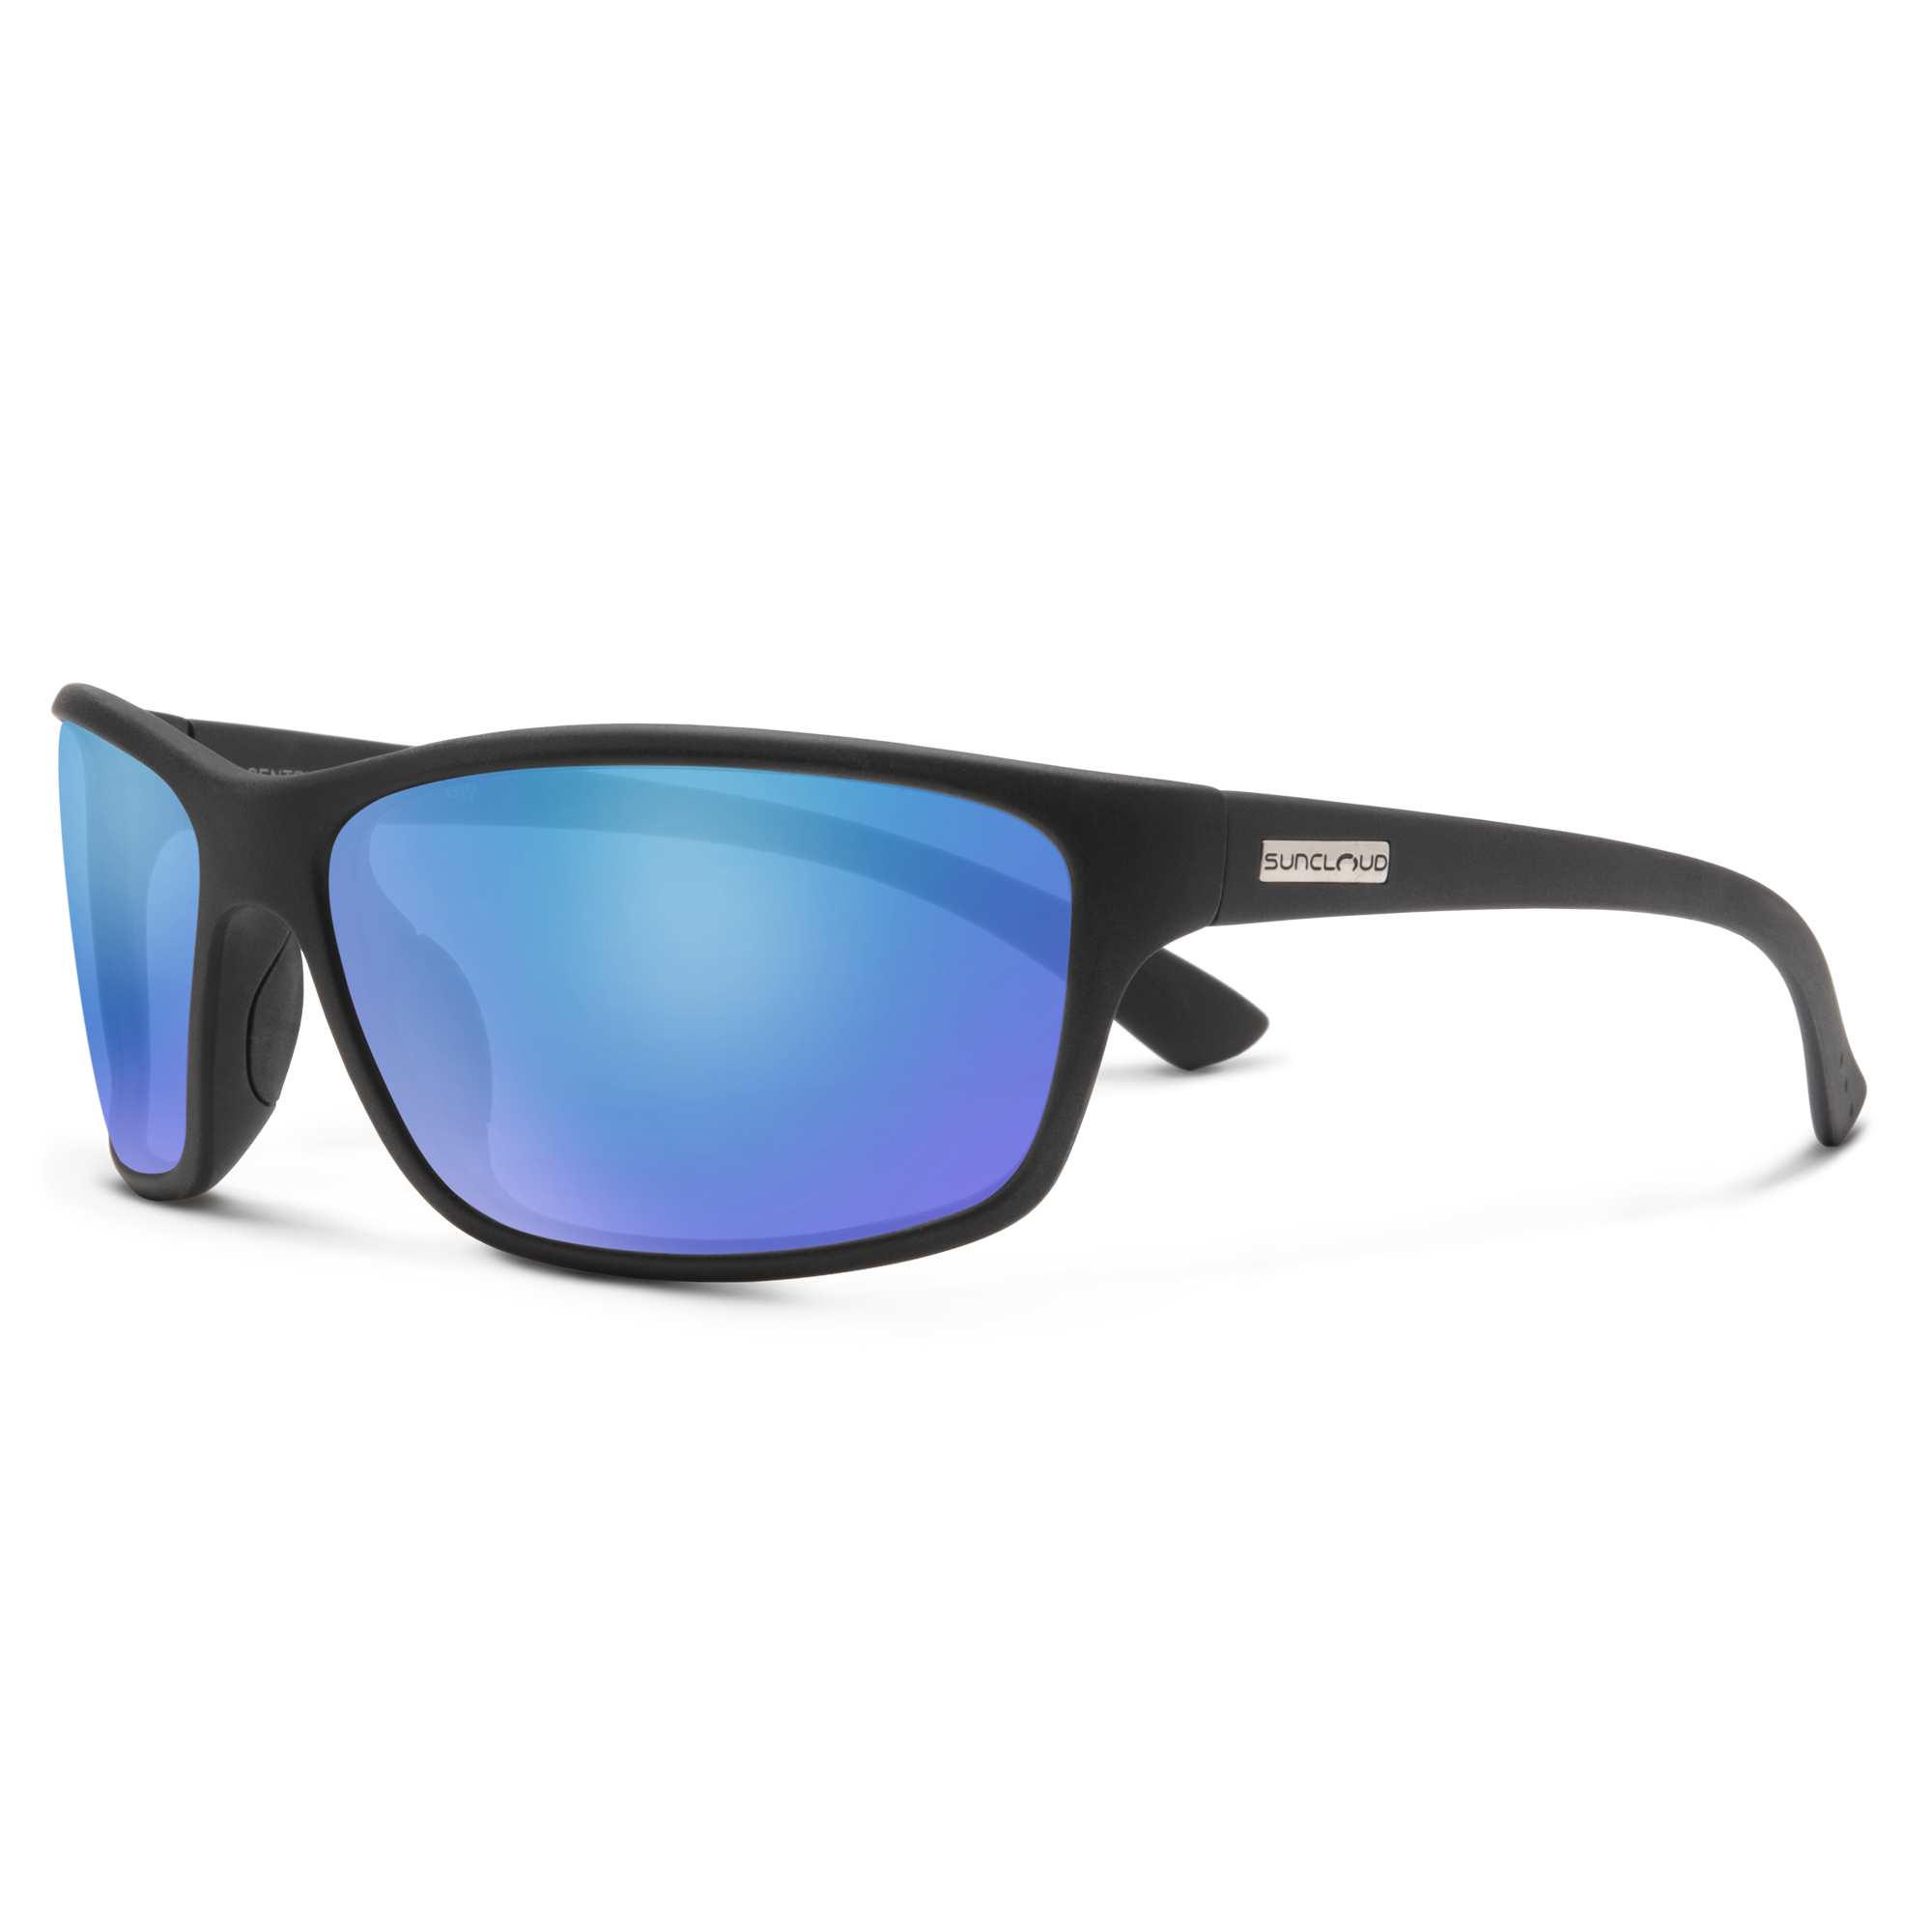 ディスカウント 取寄 サンクラウド トップセイル ポーラライズド サングラス Suncloud Topsail Polarized  Sunglasses Crystal Silver Backpaint Blue Mirror